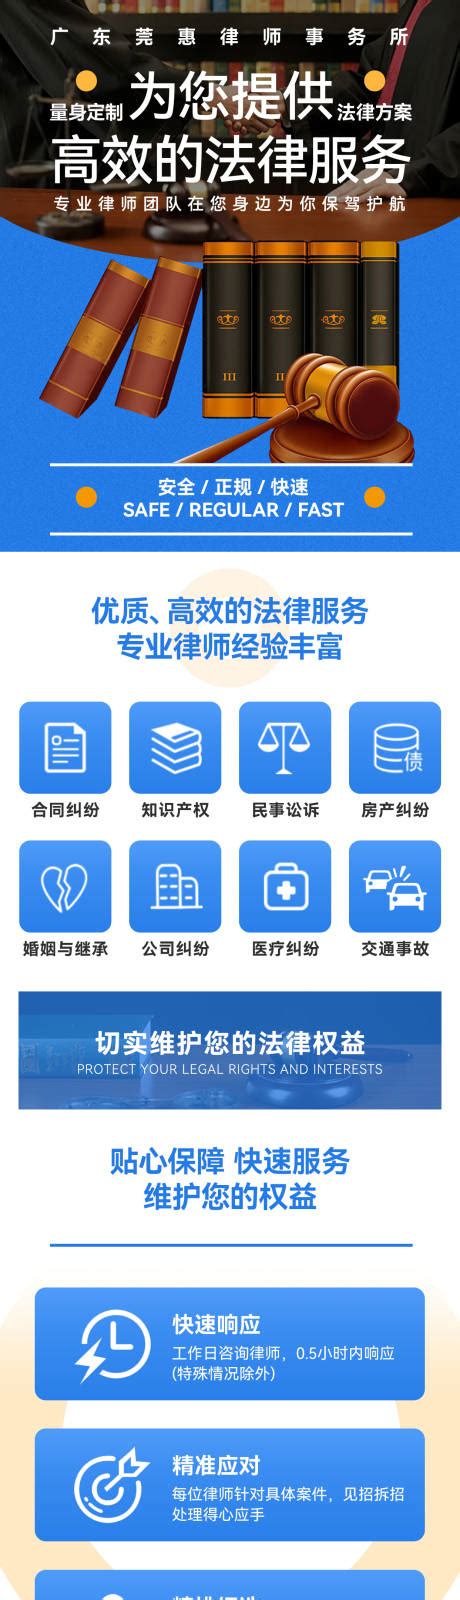 策略快讯｜北京策略律师事务所打造高端商事法律服务平台 - 知乎